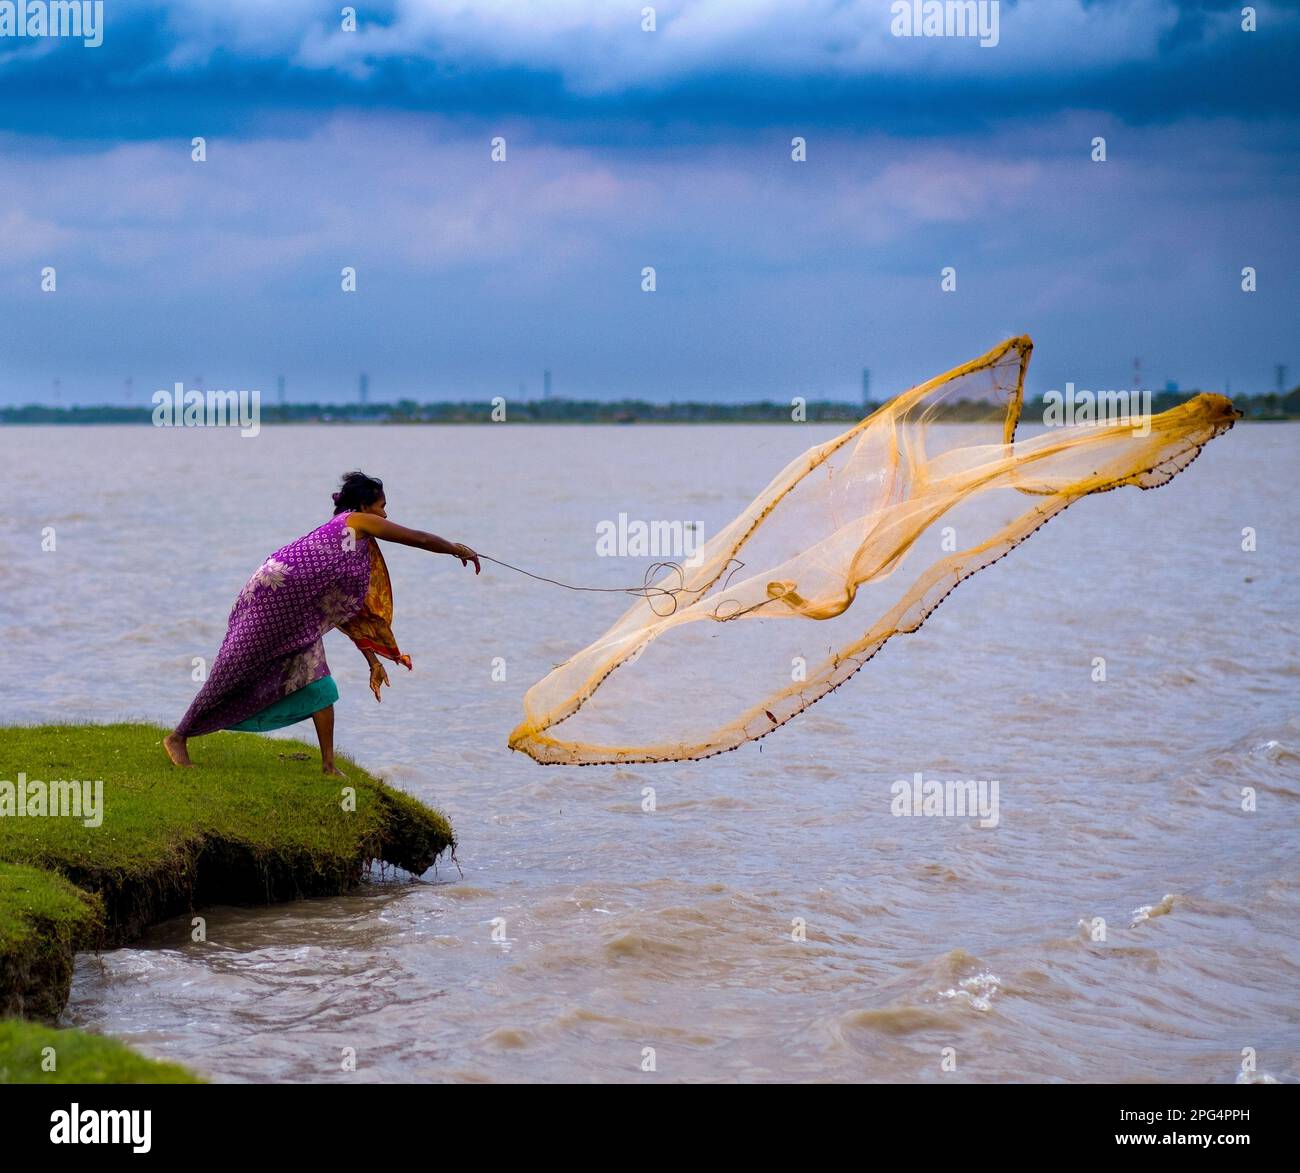 20. März 2023, West Tootpara, Khulna, Bangladesch: Die Bilder werden aus der südlichen Küstenregion Bangladeschs gemacht. Die Hauptbeschäftigung der Menschen in diesem Gebiet ist die Fischzucht und das Fischen vom Fluss aus. Die meisten Frauen in diesem Bereich sind in diesem Beruf tätig. Frauen aus einkommensschwachen Familien verdienen ihren Lebensunterhalt, indem sie in Flüssen fischen und Garnelen fangen. Da die meisten Familien und Frauen an der Südküste im Fischereigeschäft der Region tätig sind und die meisten Frauen unabhängig sind und auch die Wirtschaft des Landes beeinflussen. (Kreditbild: © Md Harun Oder Ra Stockfoto